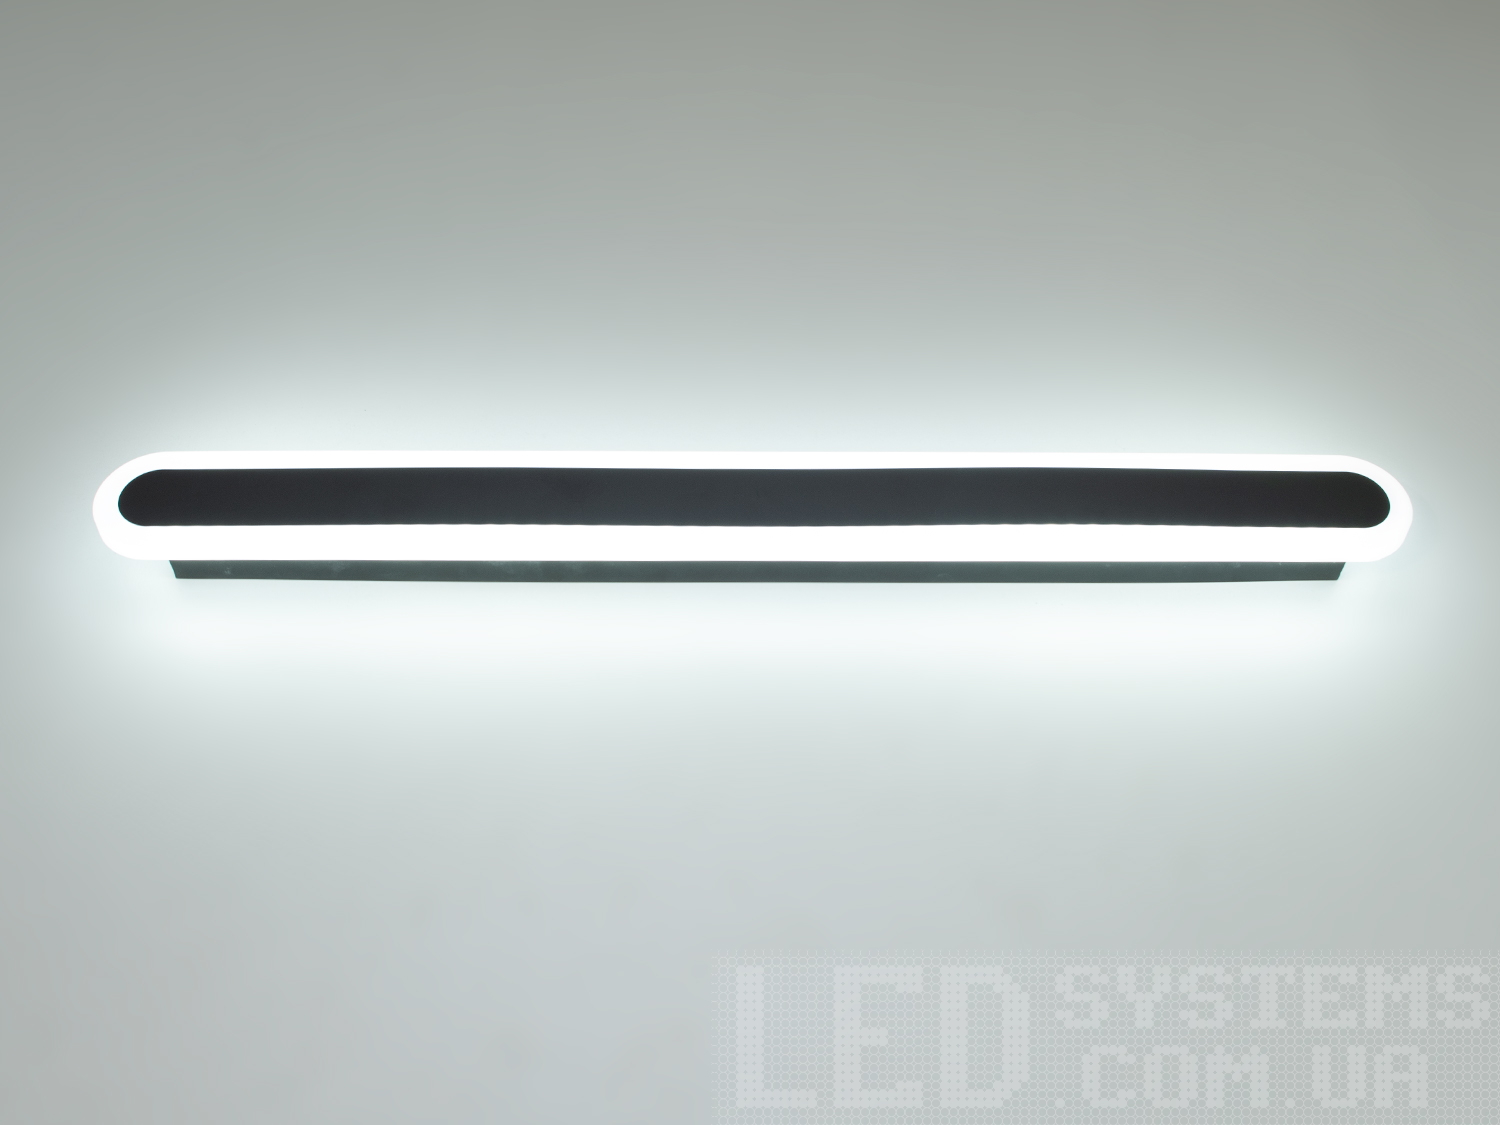 Мінімалістичний LED світильник-планка з незвичайним виконанням плафонів, що обрамляють LED лампи. LED світильник є ідеальним рішенням для акцентного (елементного) підсвічування в інтер'єрі - підсвічування дзеркал, картин, стінних ніш, особливих деталей інтер'єру і є не просто утилітарним світильником як звичайне лінійне підсвічування. Світильник має унікальні світлодіодні енергозберігаючі лампи. Які за дуже низької споживаної потужності створюють потужний світловий потік. Витончені накладні світлодіодні світильники призначені для створення яскравого світлодіодного освітлення з регульованою температурою кольору від теплого білого до холодного білого. Перемикання спектрів світіння світлодіодного світильника здійснюється простим вимкненням-вмиканням. Кріпиться до будь-яких видів поверхонь універсальним кріпленням-на планку.